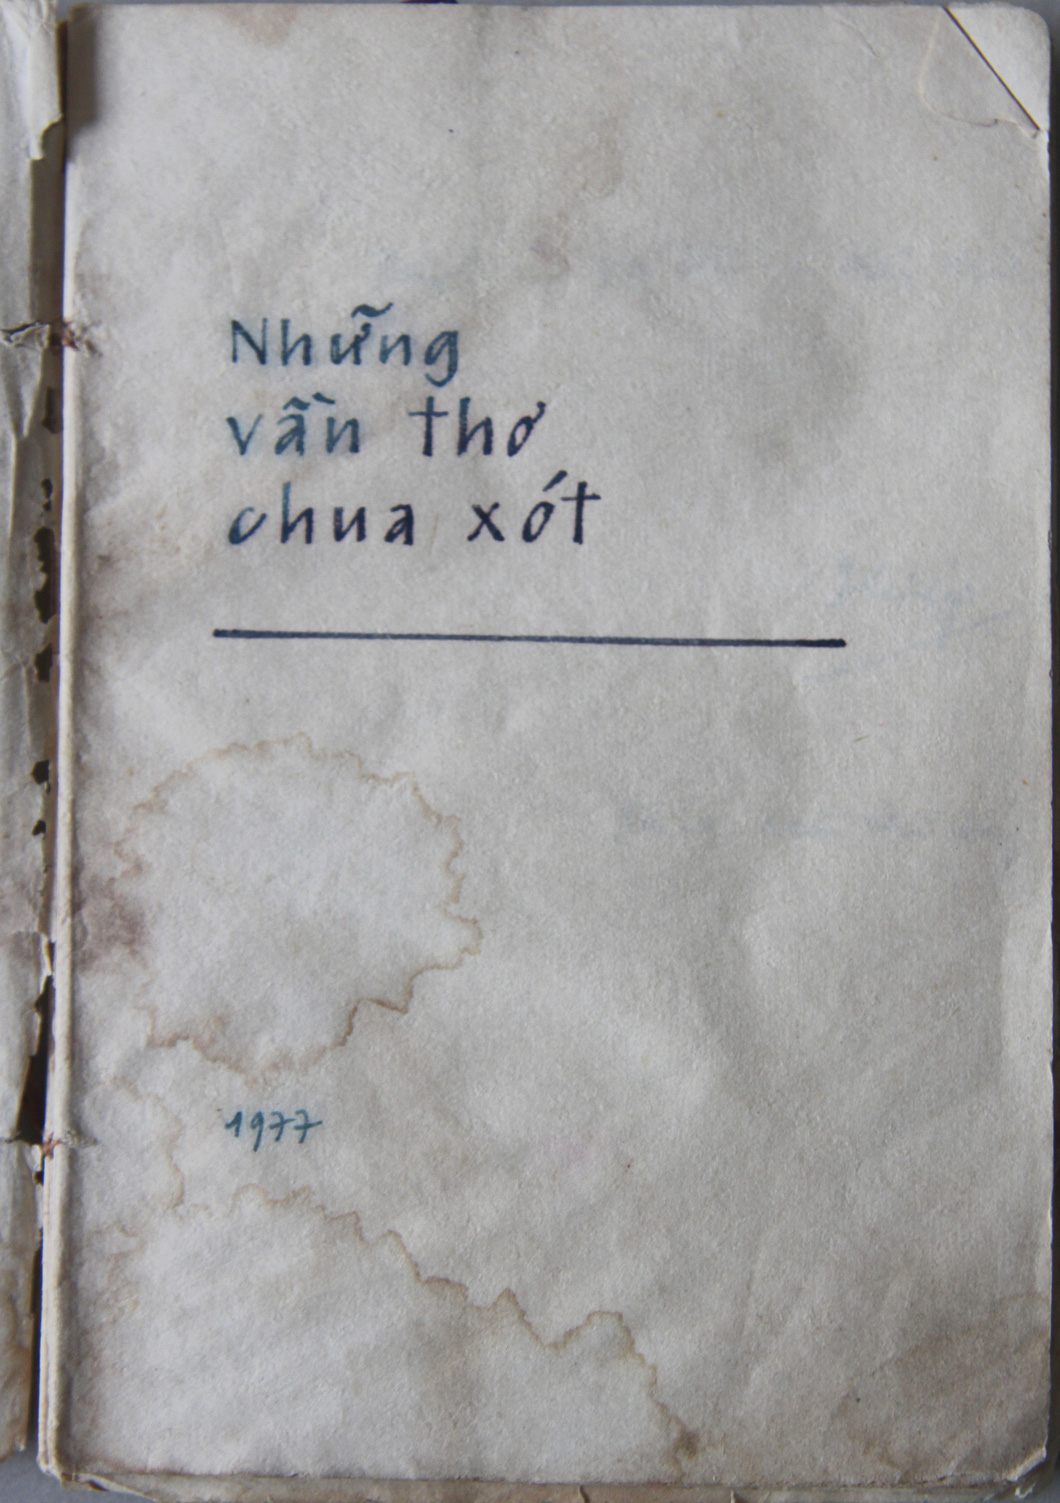 Trang đầu "Những vần thơ chua xót" của Nguyễn Huy Thiệp - Ảnh: MAI ANH TUẤN